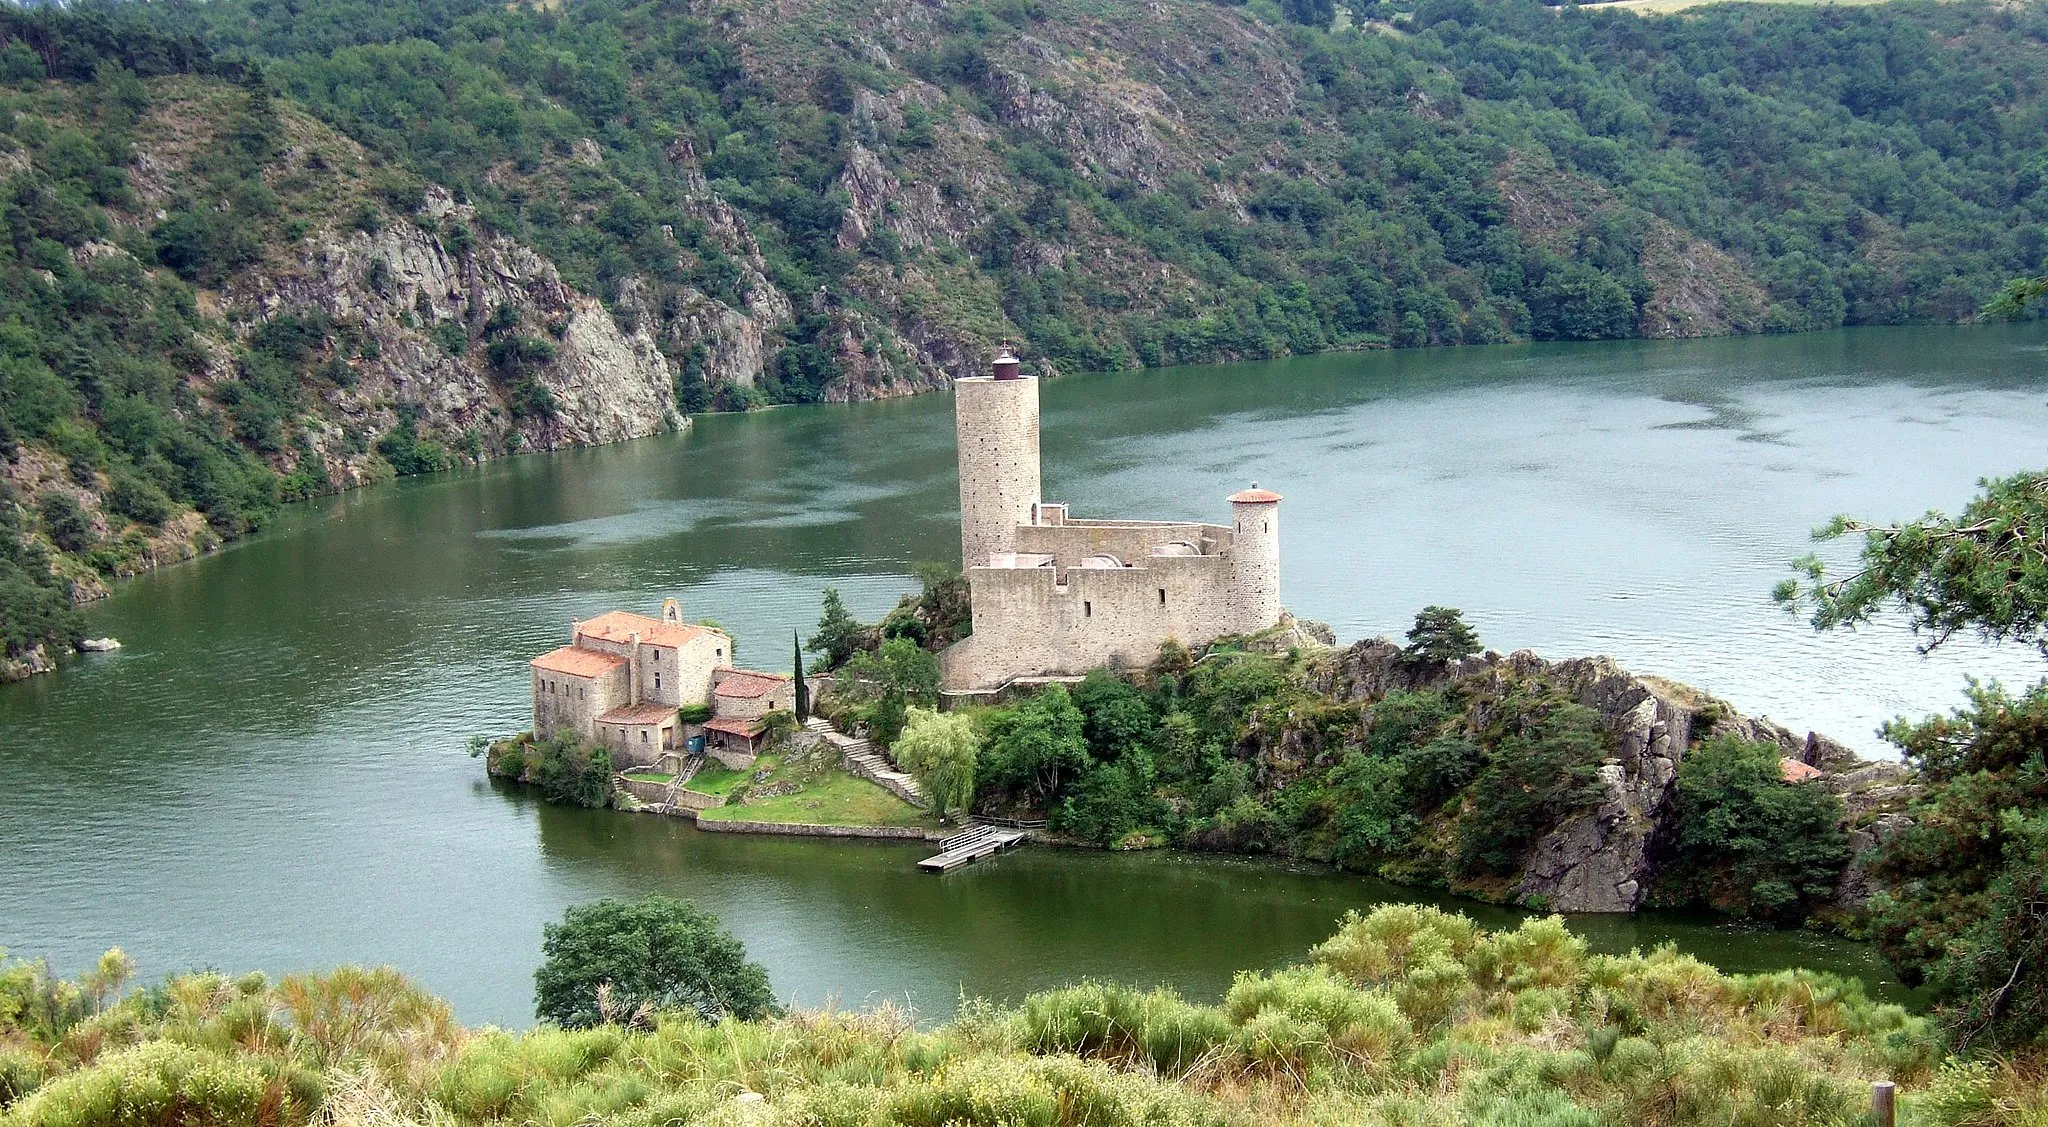 Photo showing: The castle "Château de Grangent", found on the Lac de Grangent, in the département of Loire, France.